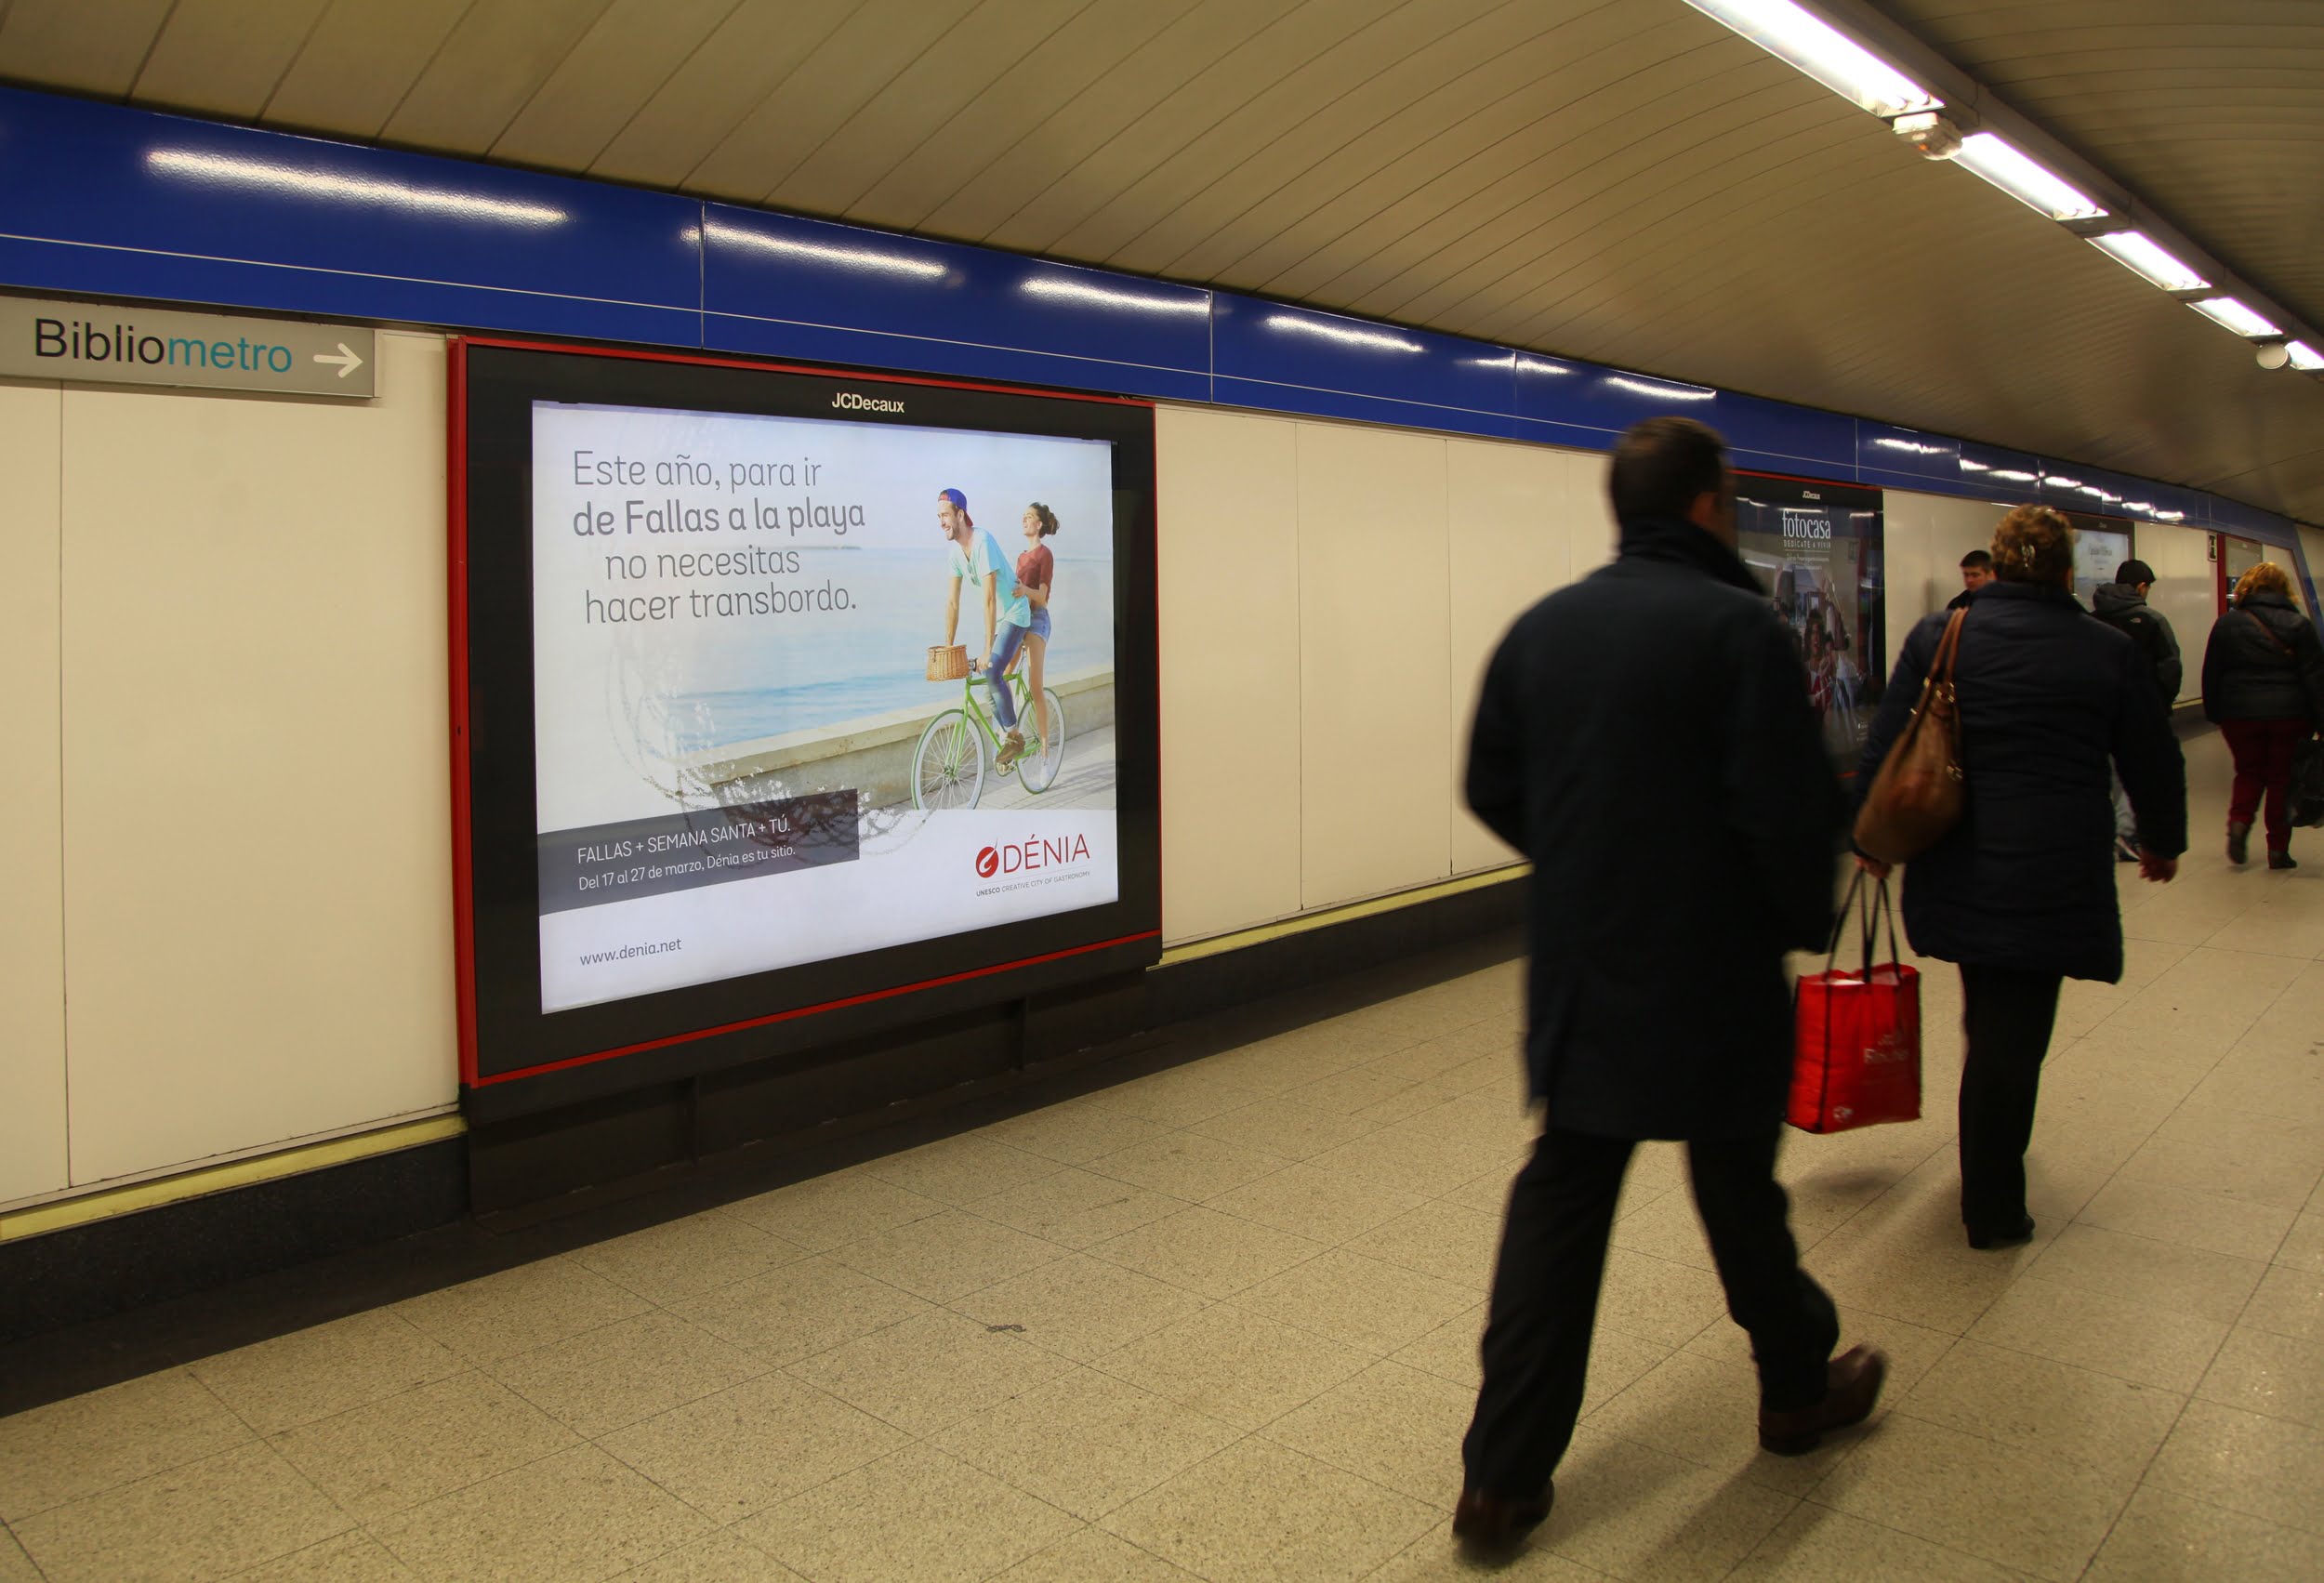 Promoción de Dénia en la estación de metro de Nuevos Ministerios